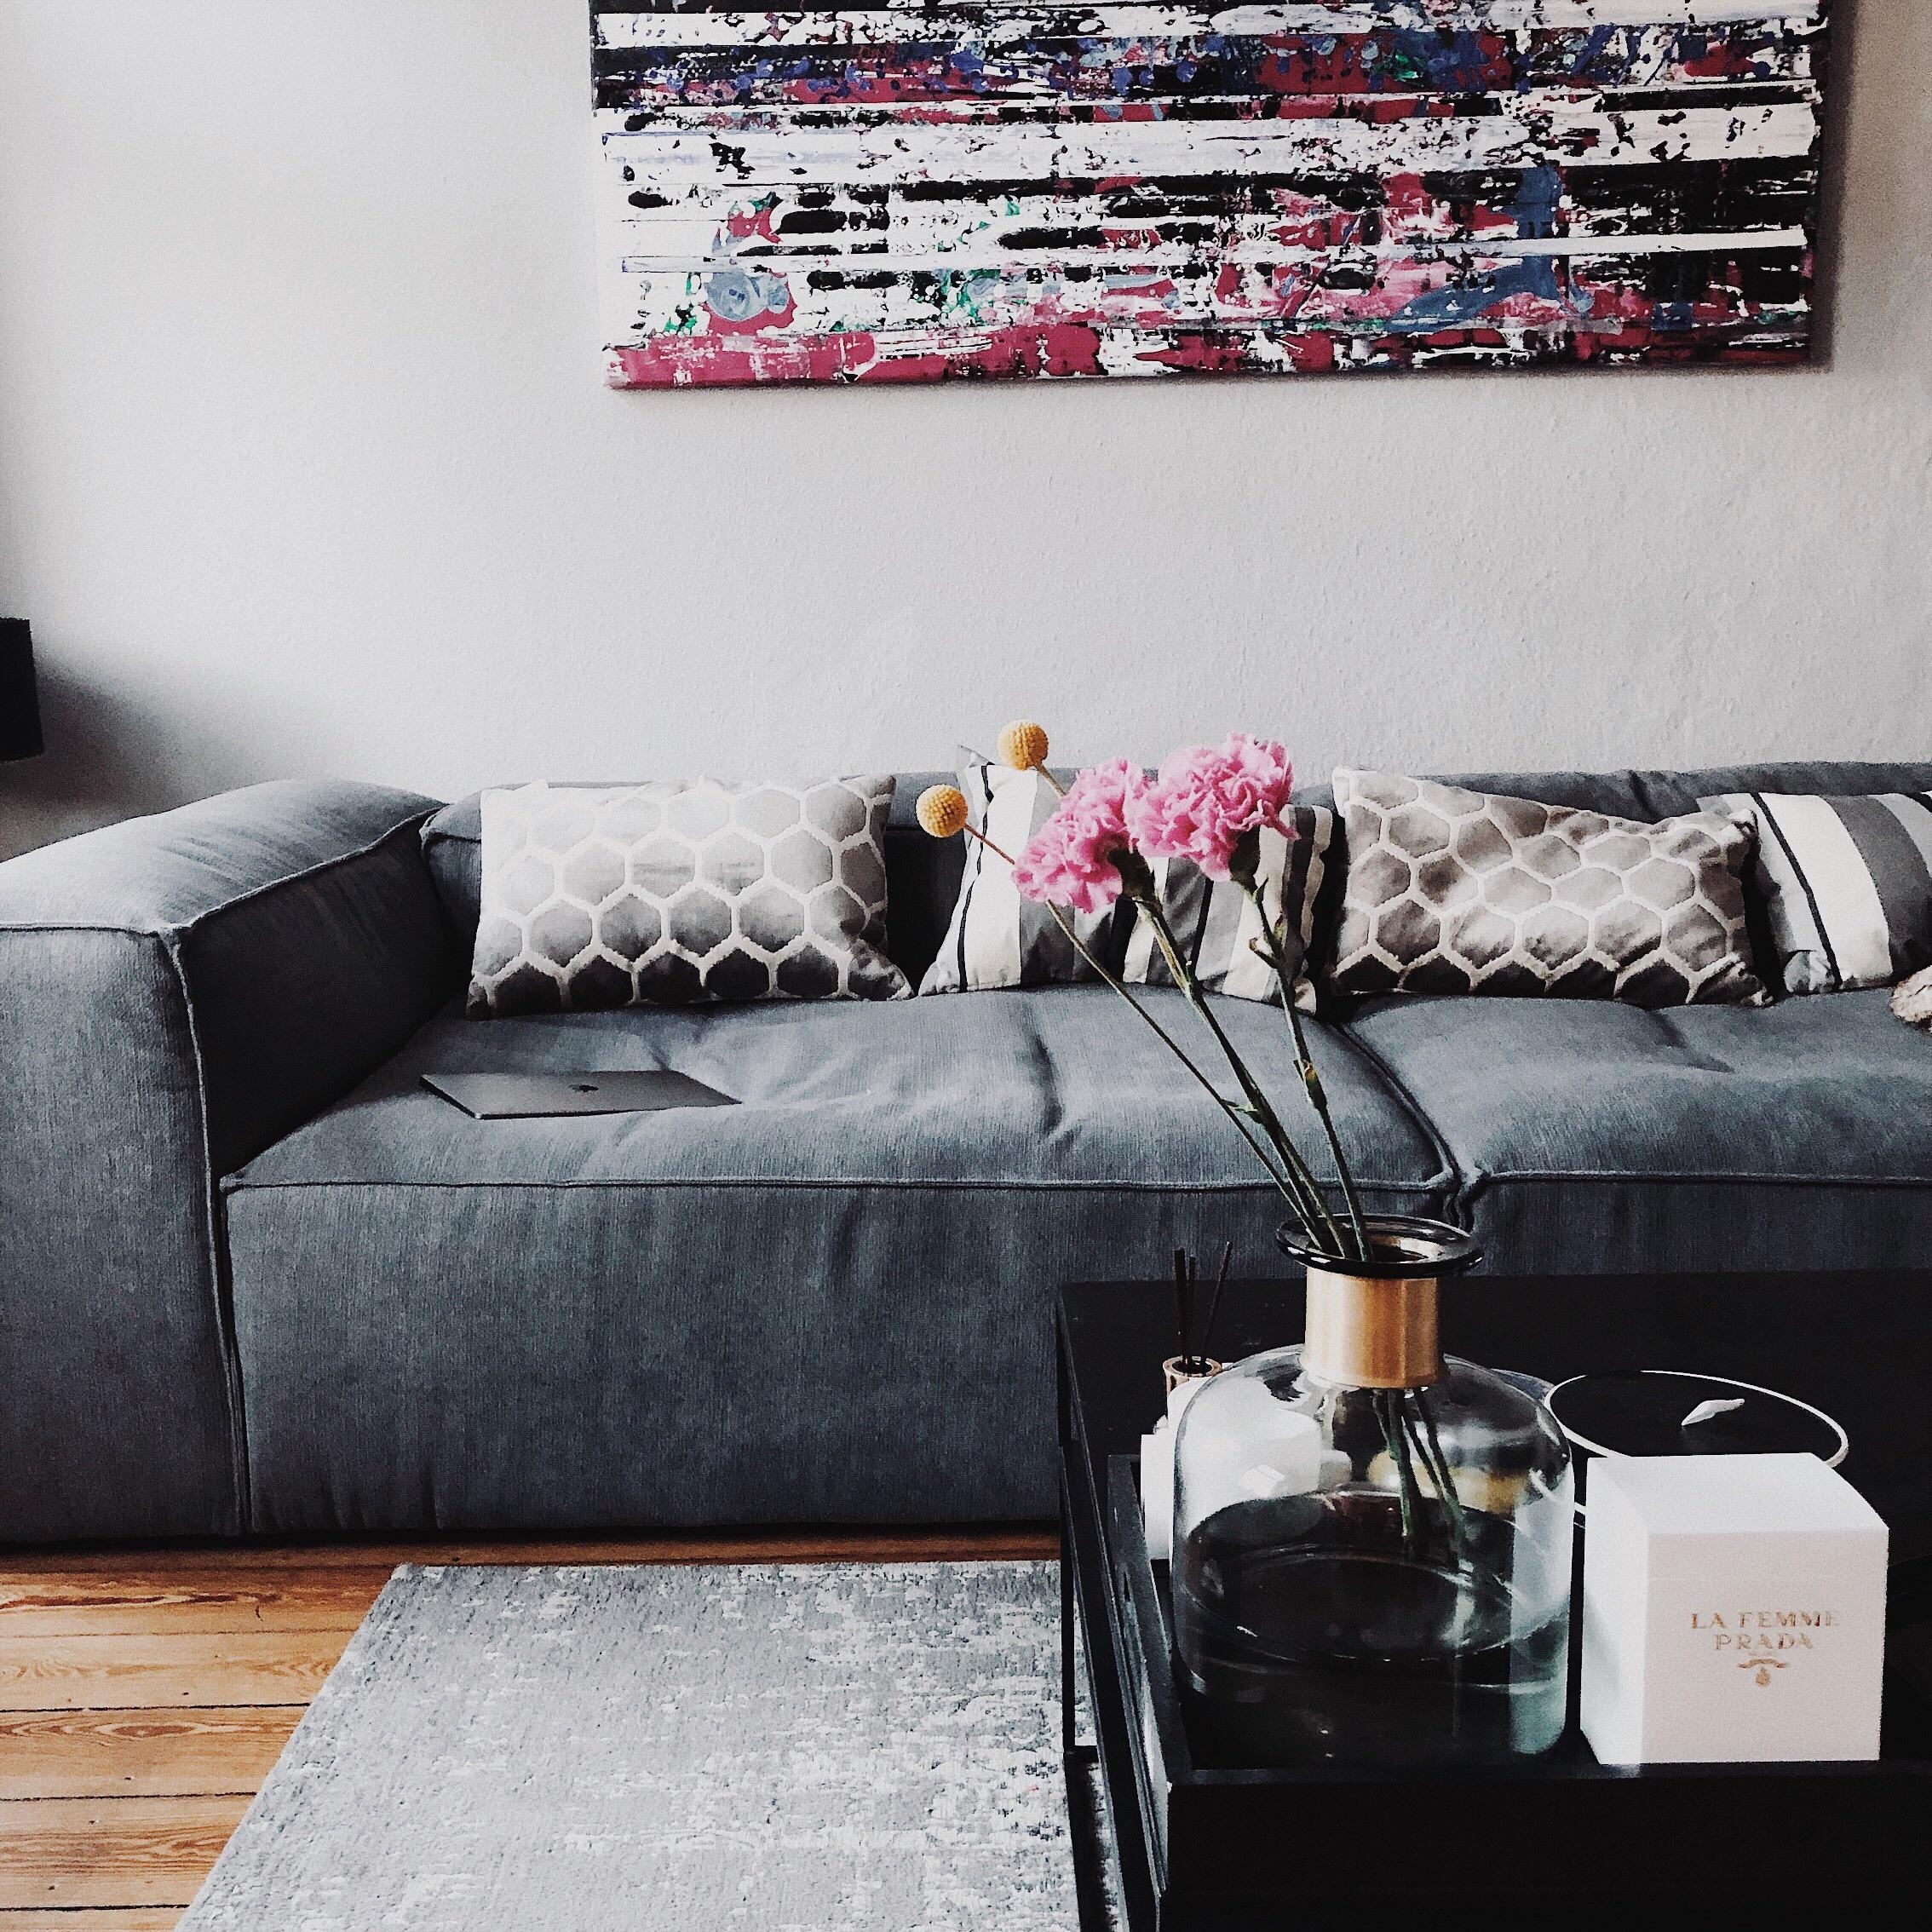 Sundaygoal: couch #couchstyle #couch #couchtisch #flowers #dekor #vase #hygge #homedecor #kunst #design #danishdesign